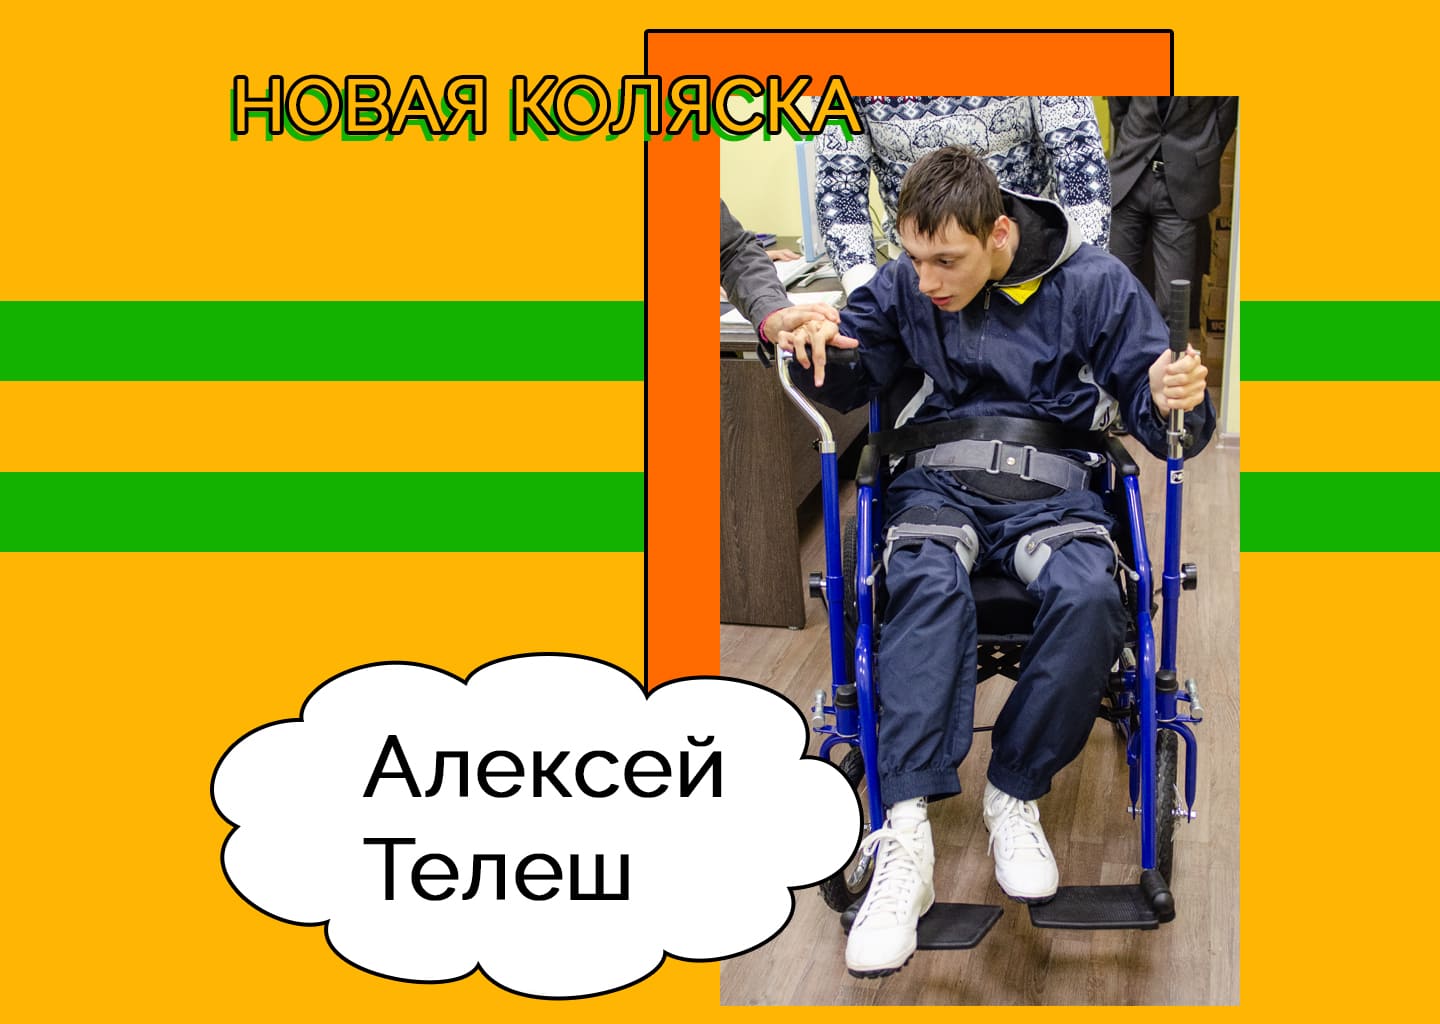 У Алексея Телеша новая коляска